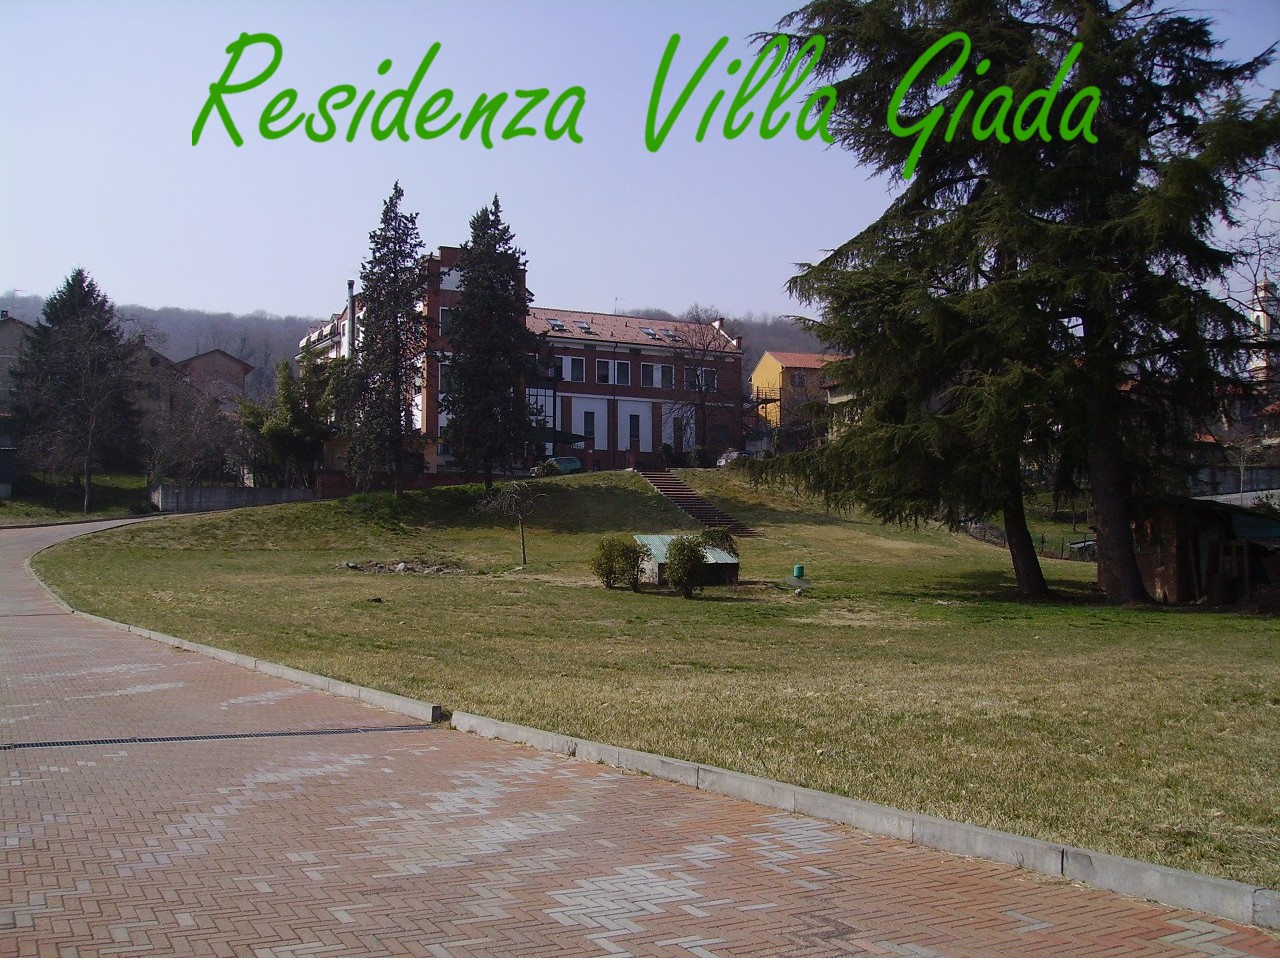 Residenza Villa Giada